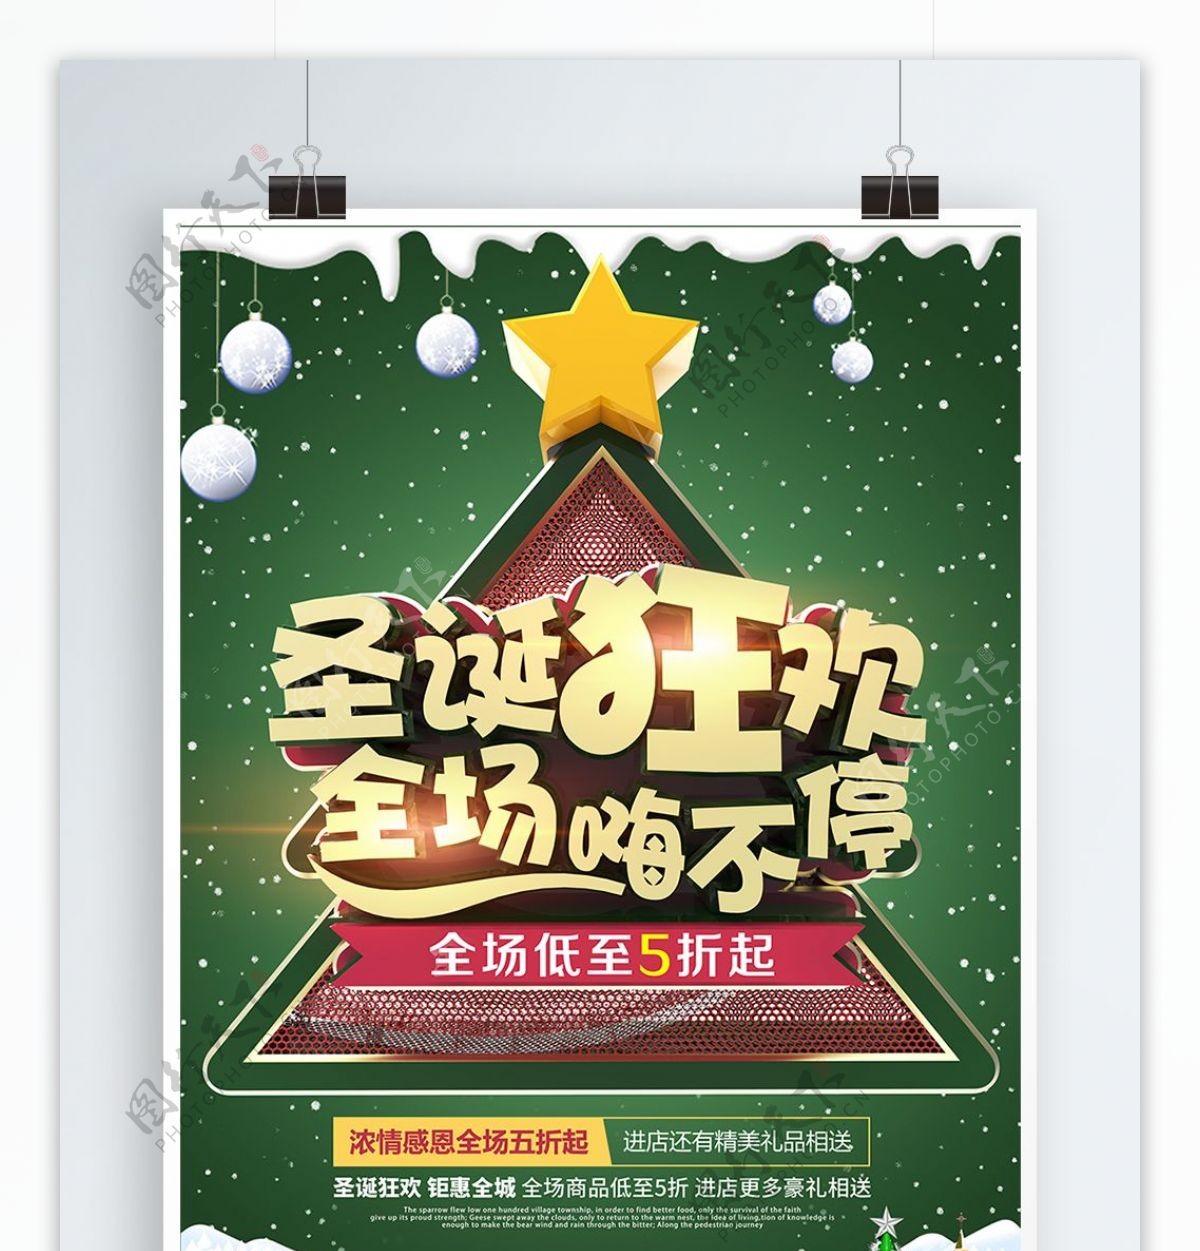 圣诞节狂欢商场促销活动海报